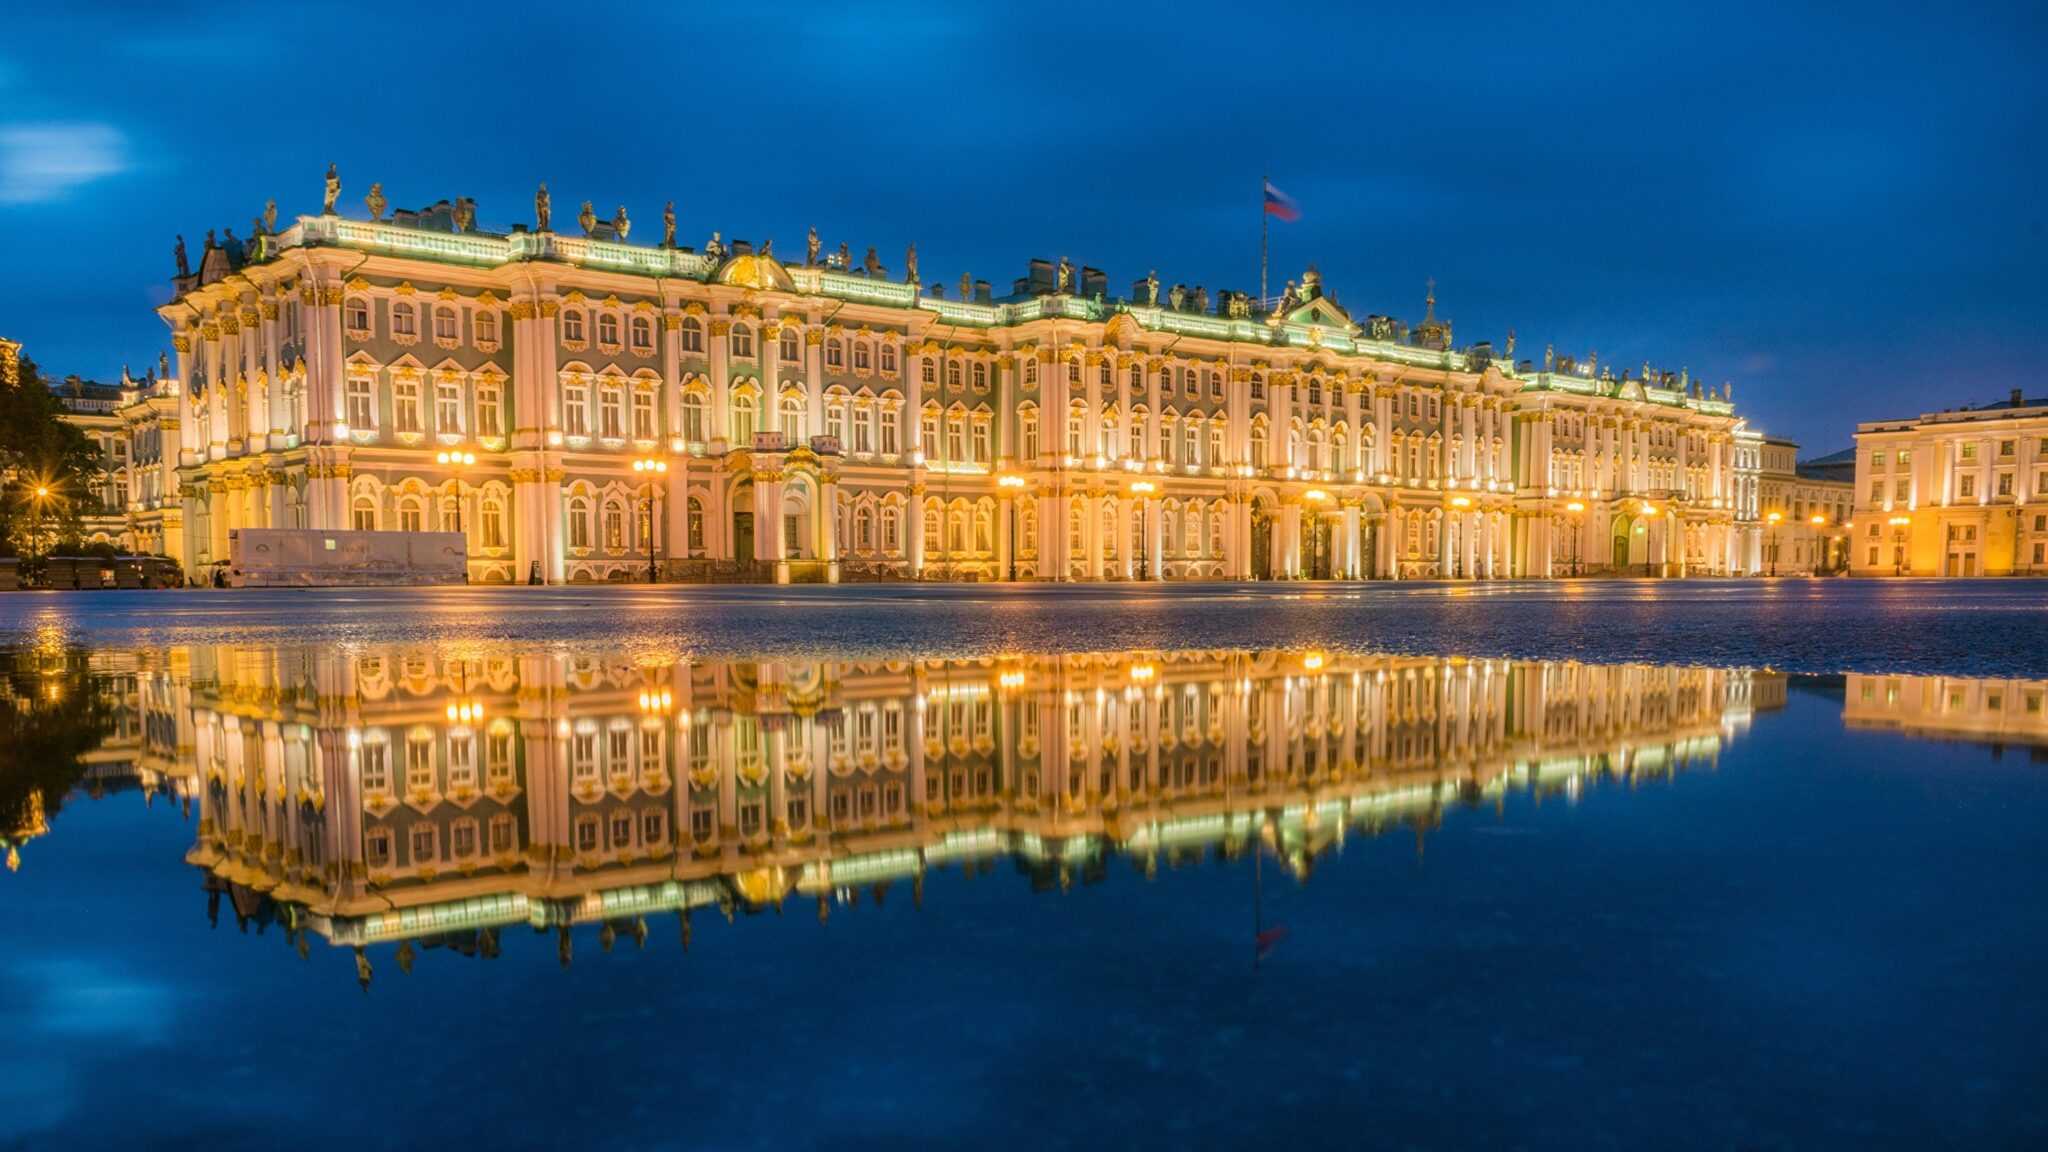 Зимний дворец санкт-петербурга: официальный сайт, фото, адрес, описание